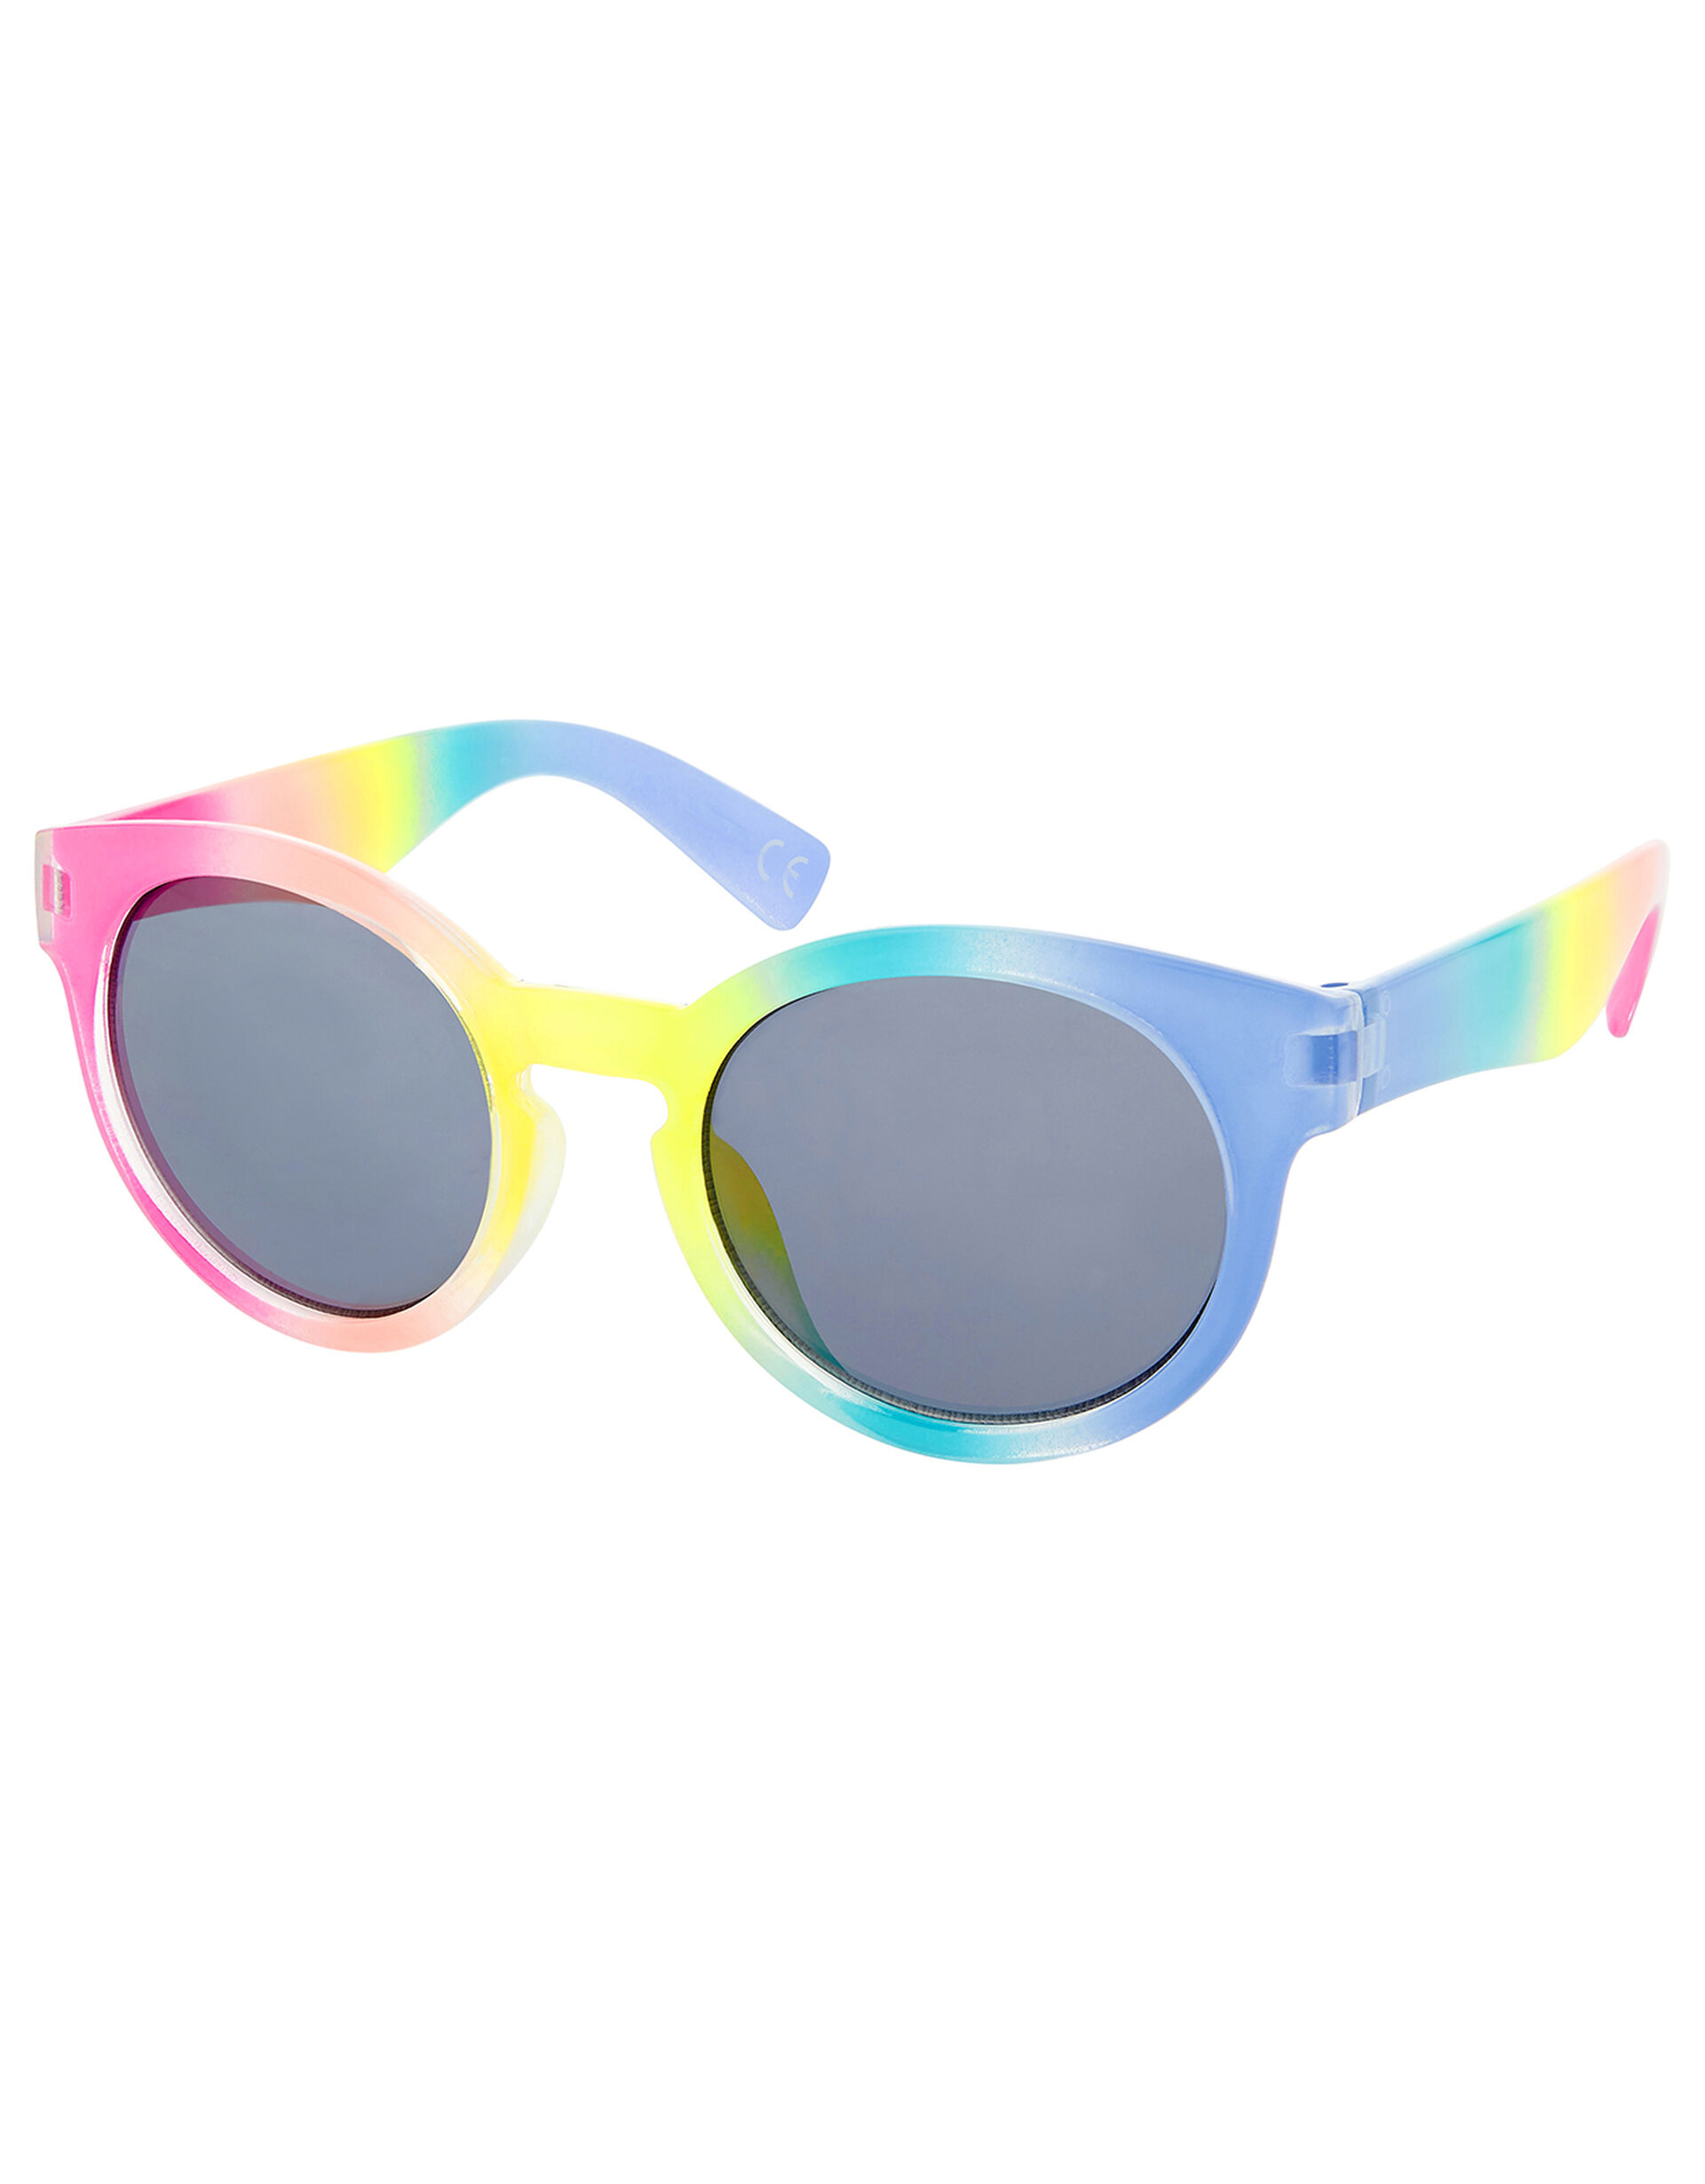 Rainbow Sunglasses, , large